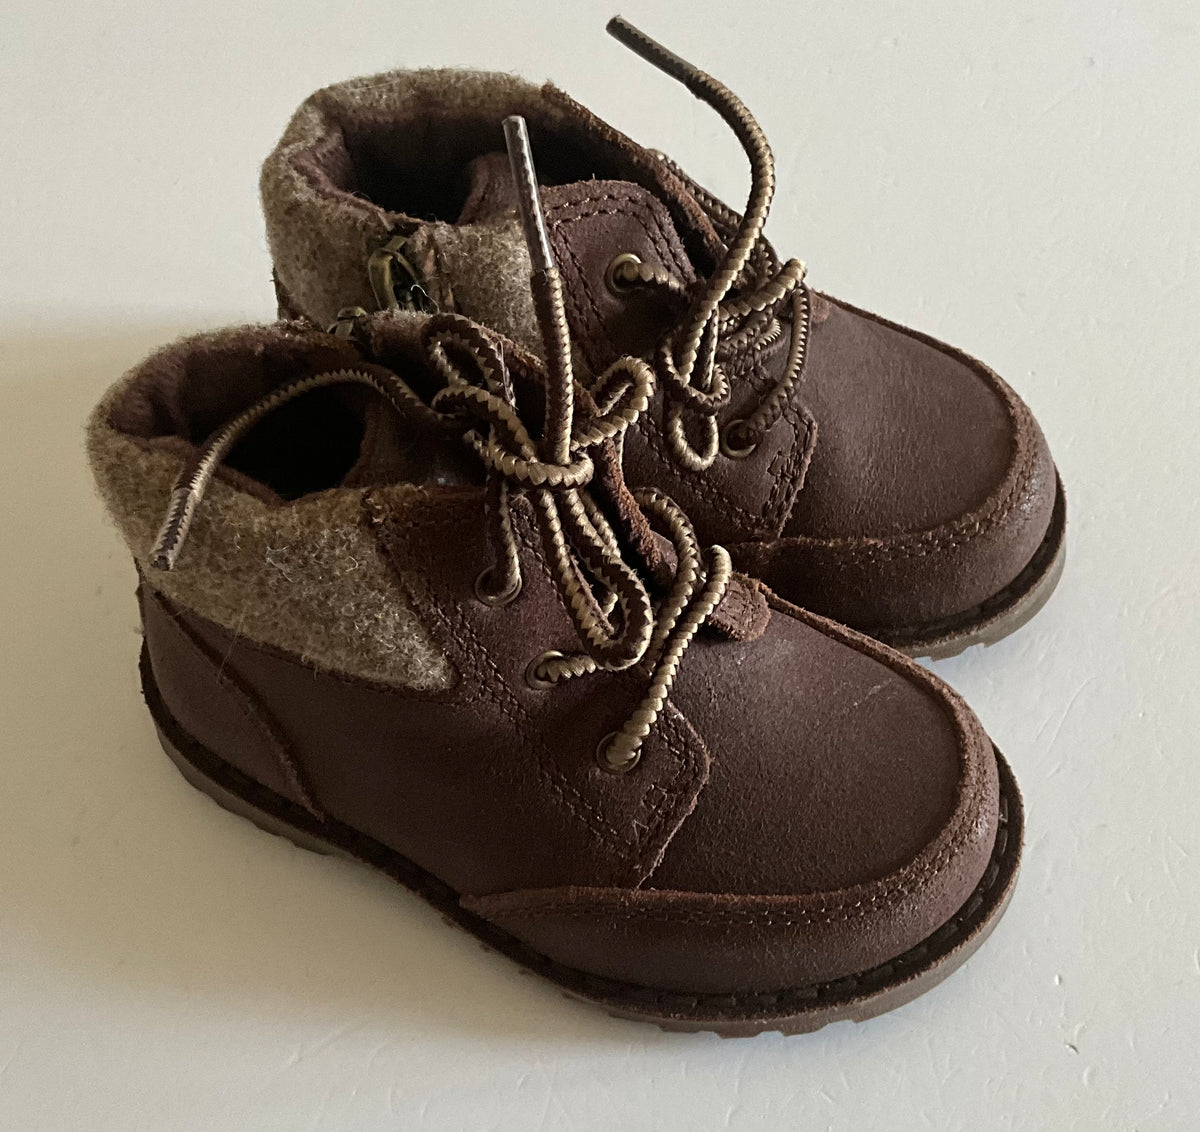 Genuine UGG Boots, Infant Size 5